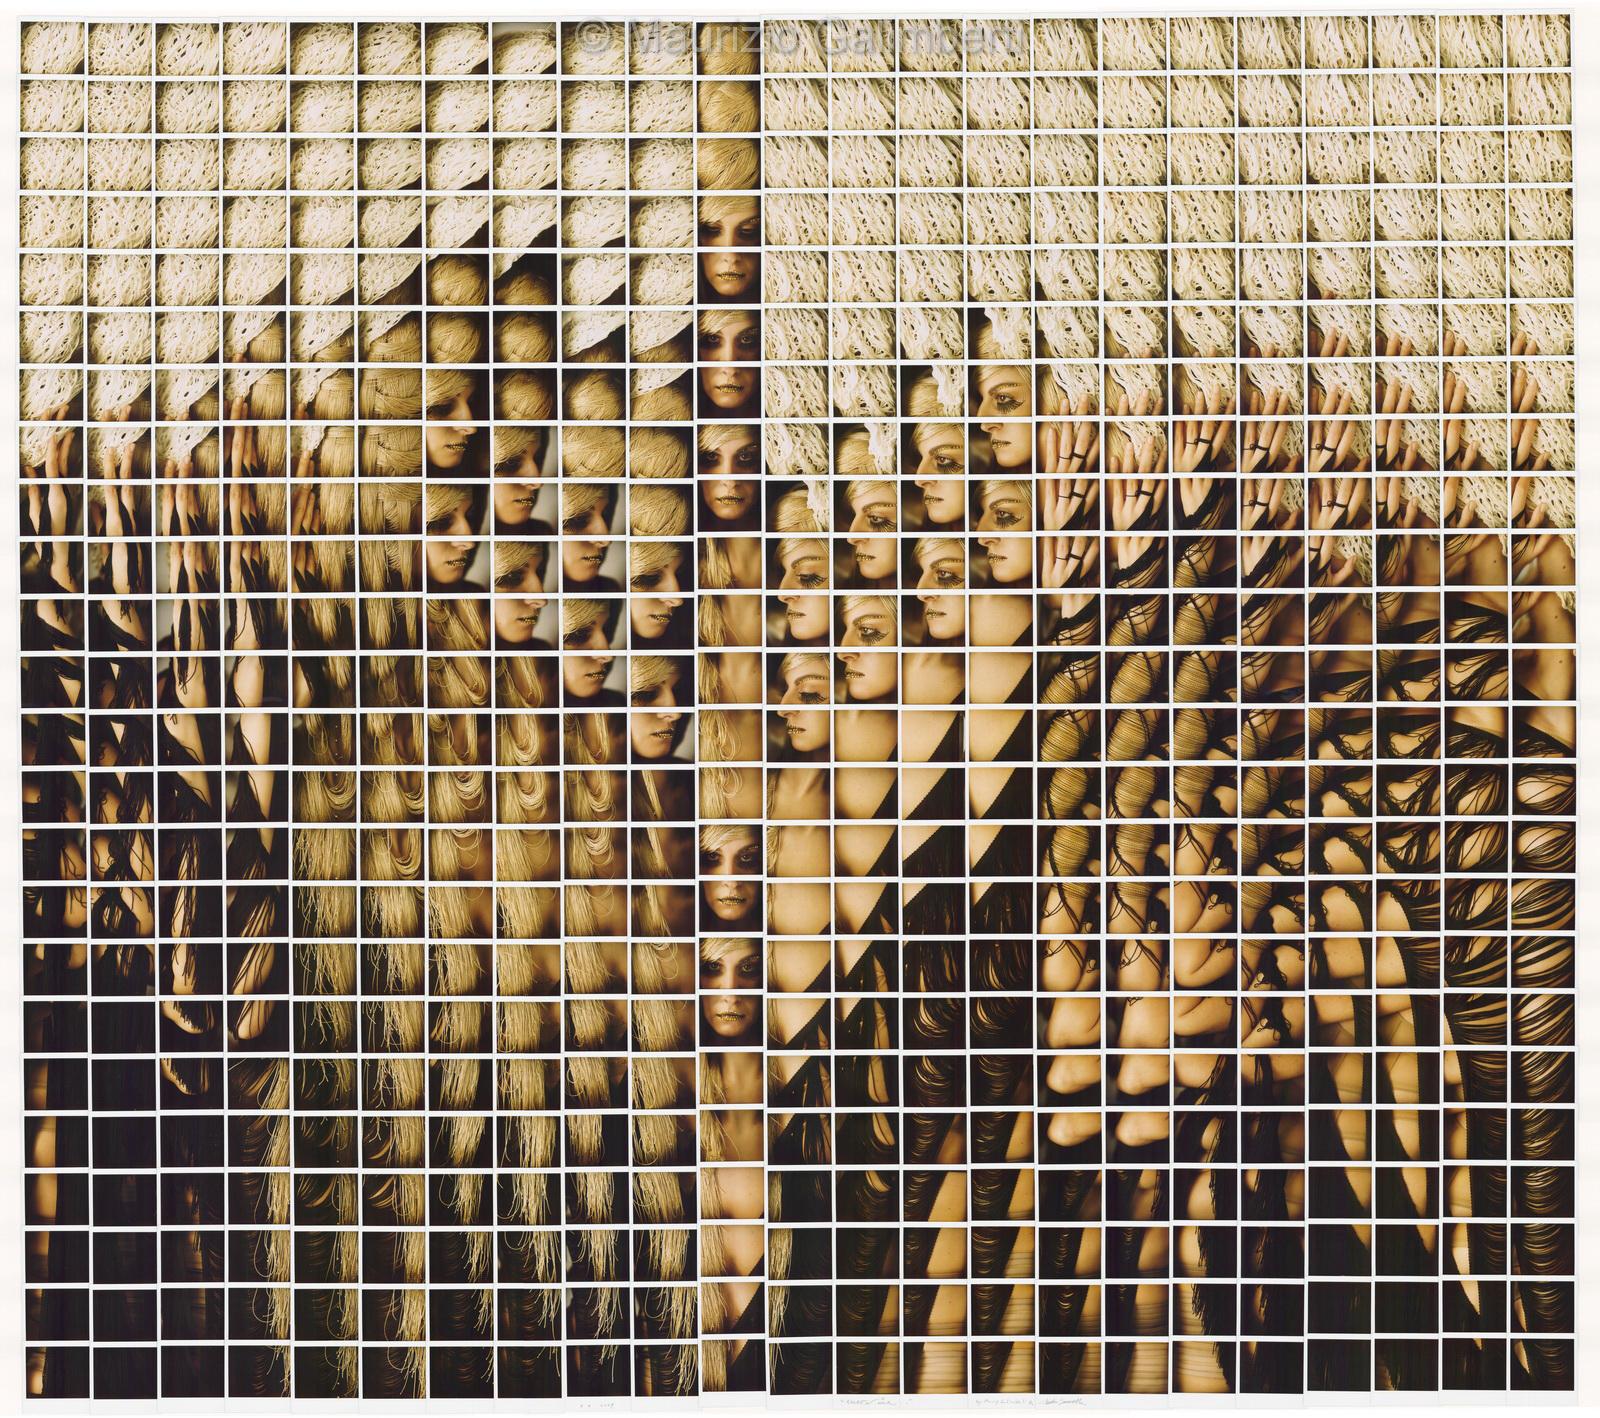 Maurizio Galimberti, mosaico polaroid